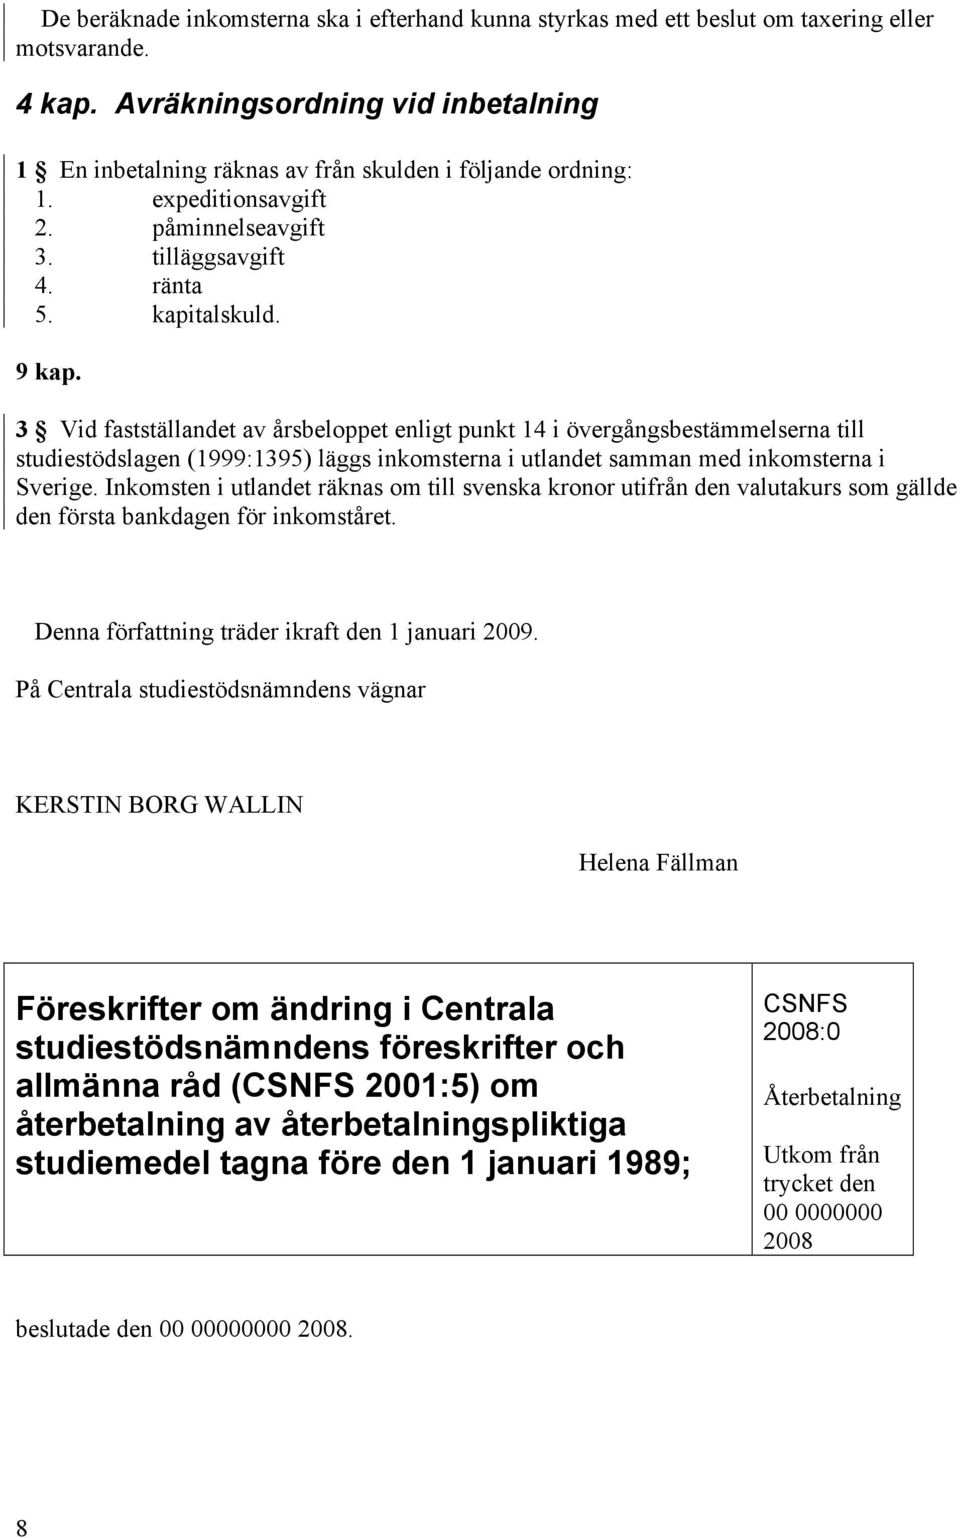 3 Vid fastställandet av årsbeloppet enligt punkt 14 i övergångsbestämmelserna till studiestödslagen (1999:1395) läggs inkomsterna i utlandet samman med inkomsterna i Sverige.